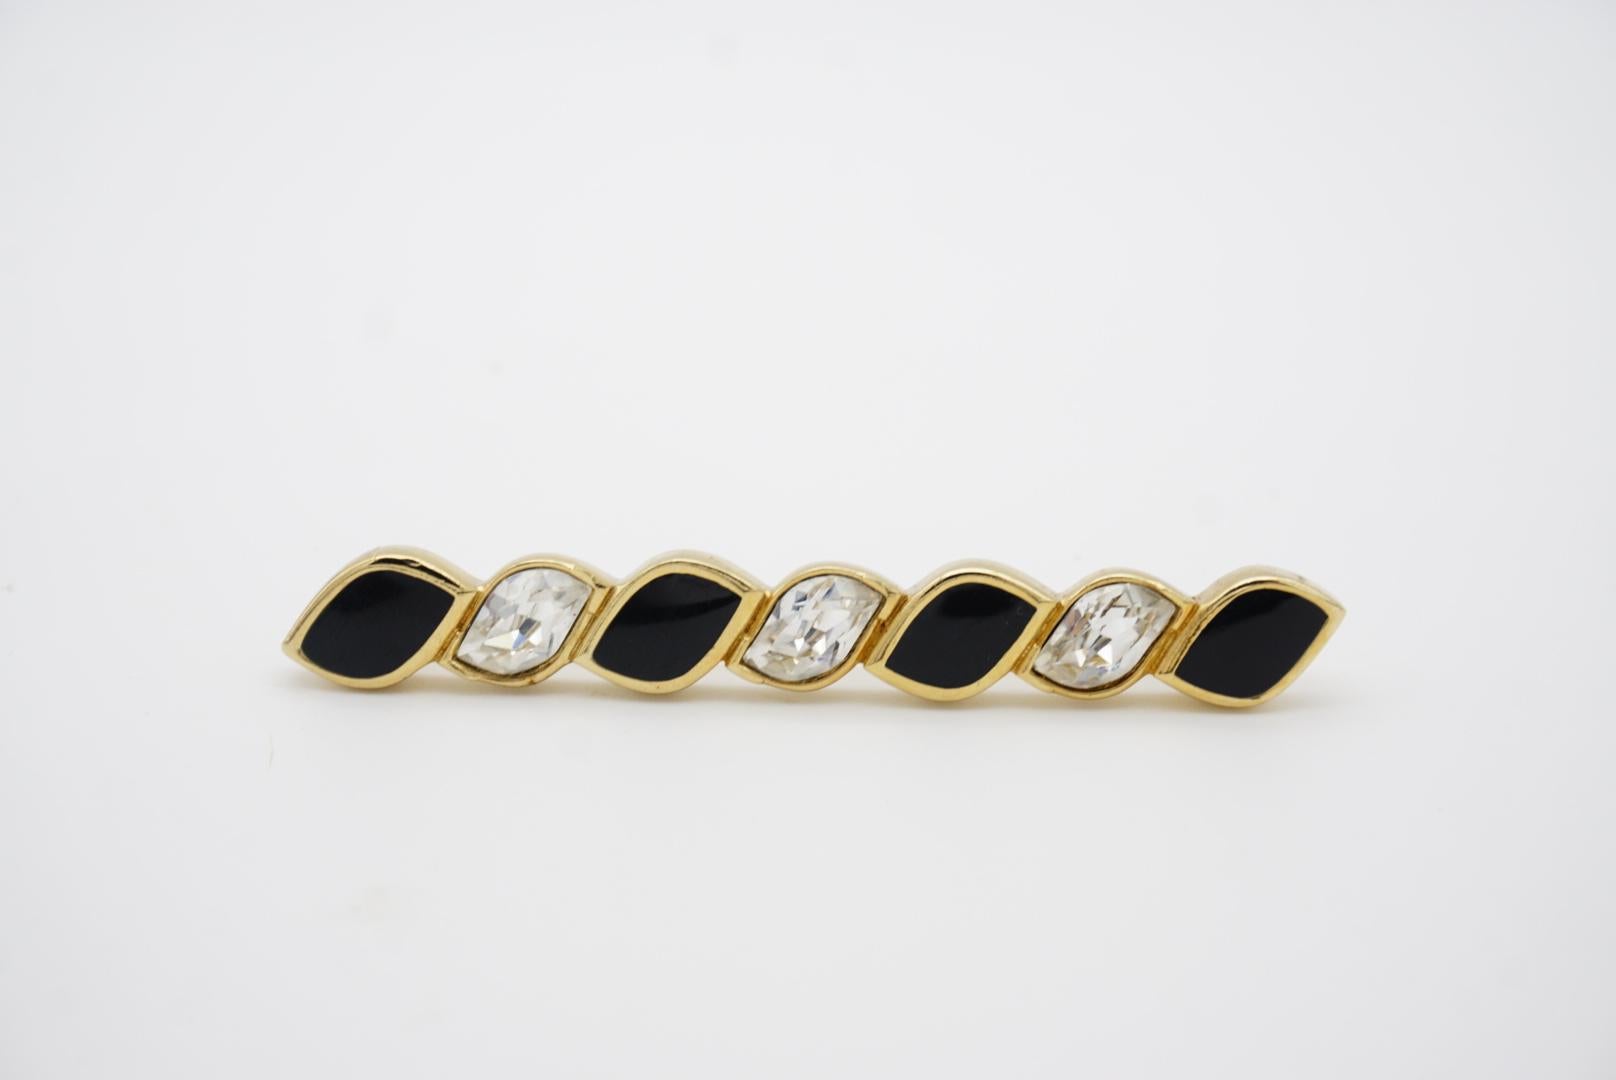 Christian Dior Vintage 1980s Bar Swarovski Crystals Black Enamel Gold Brooch For Sale 3